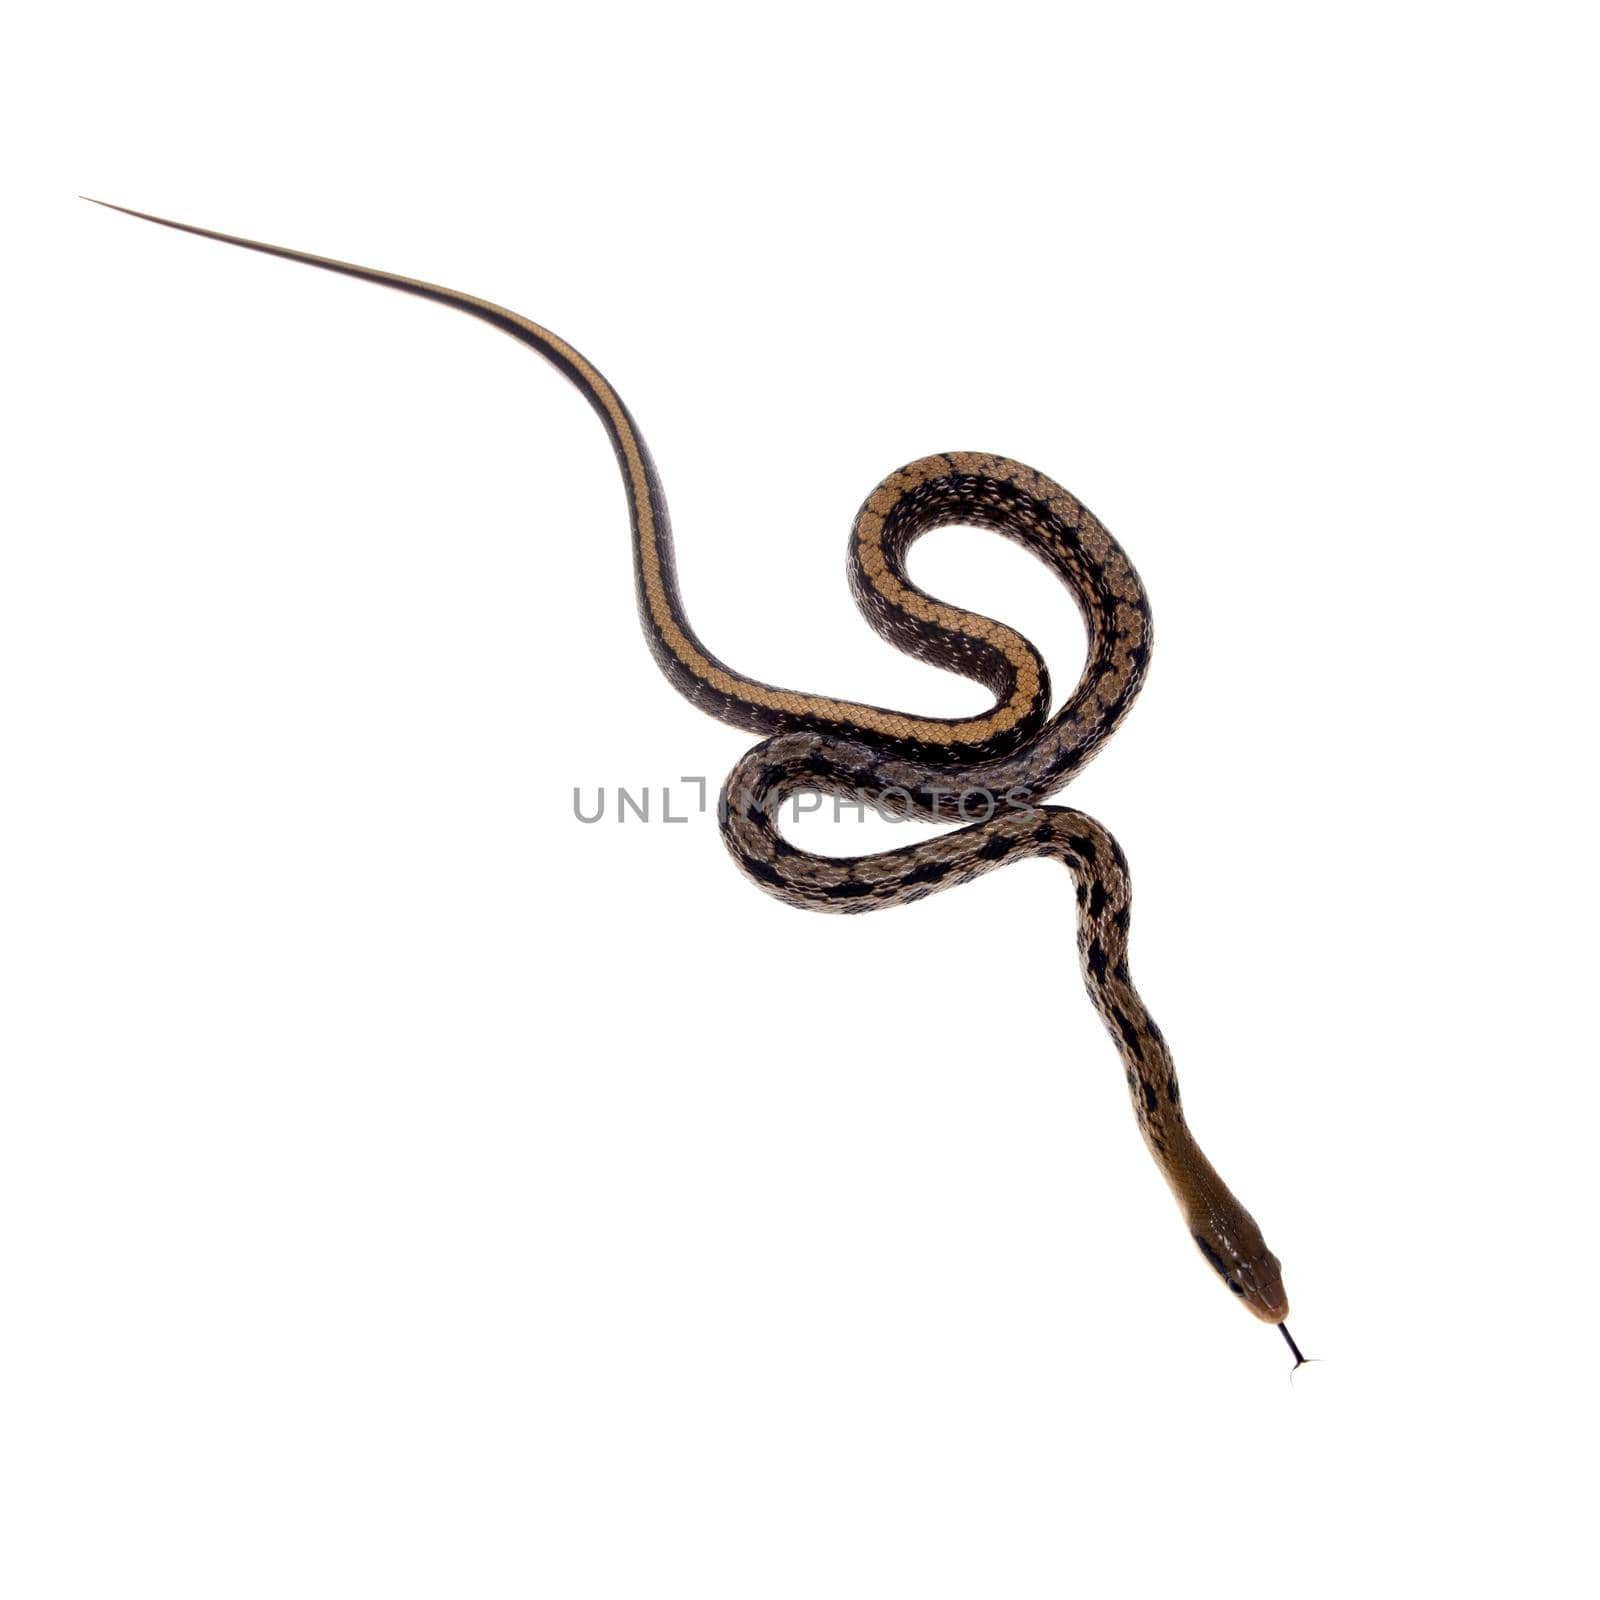 Beauty Rat Snake, Orthriophis taeniurus, on white by RosaJay